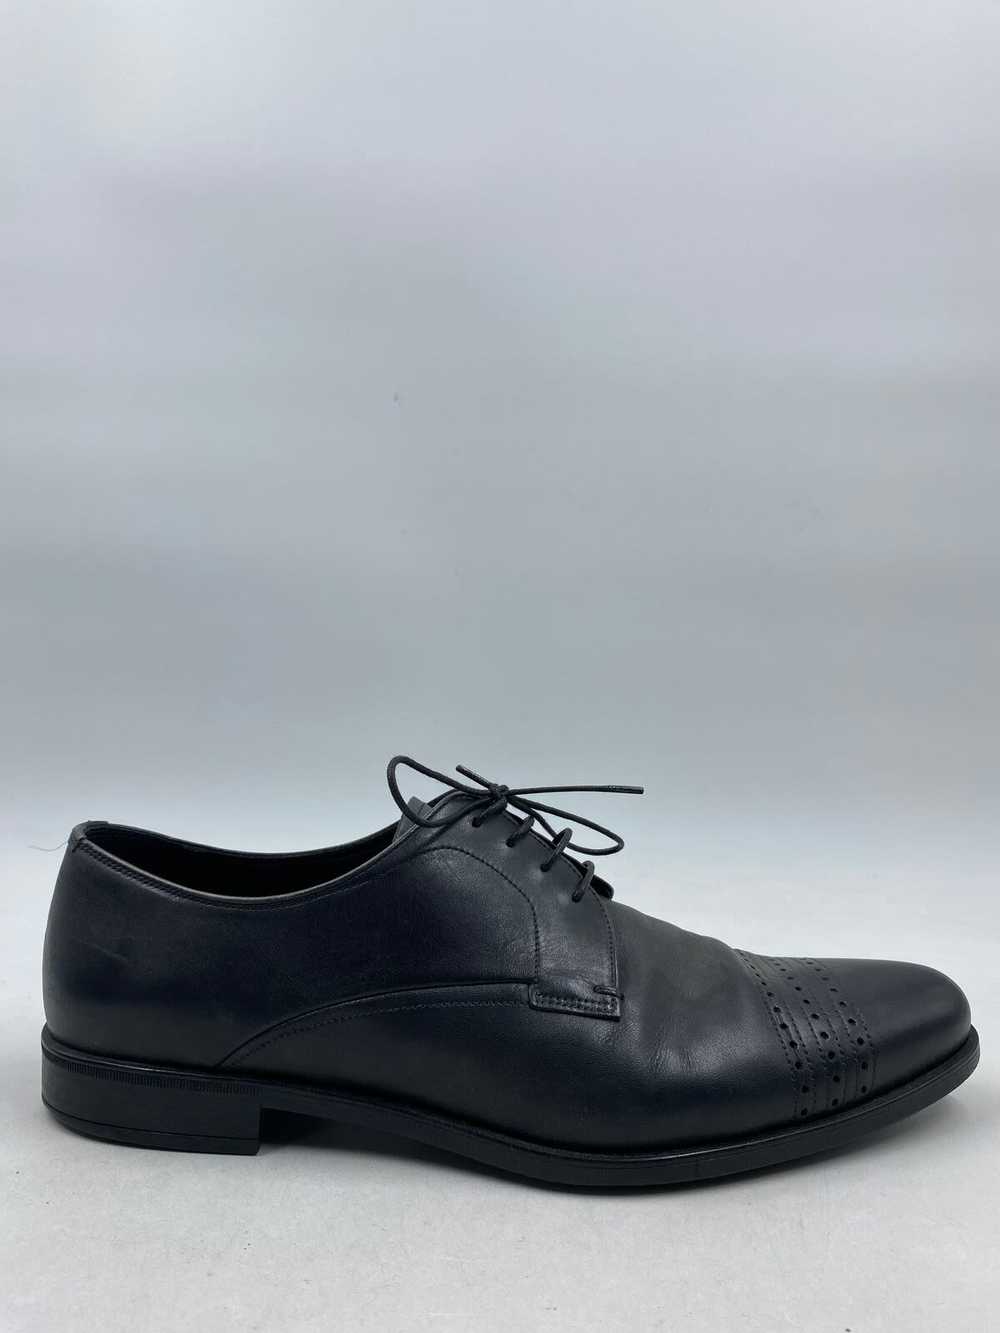 Prada Black Loafer Dress Shoe Men 8 - image 2